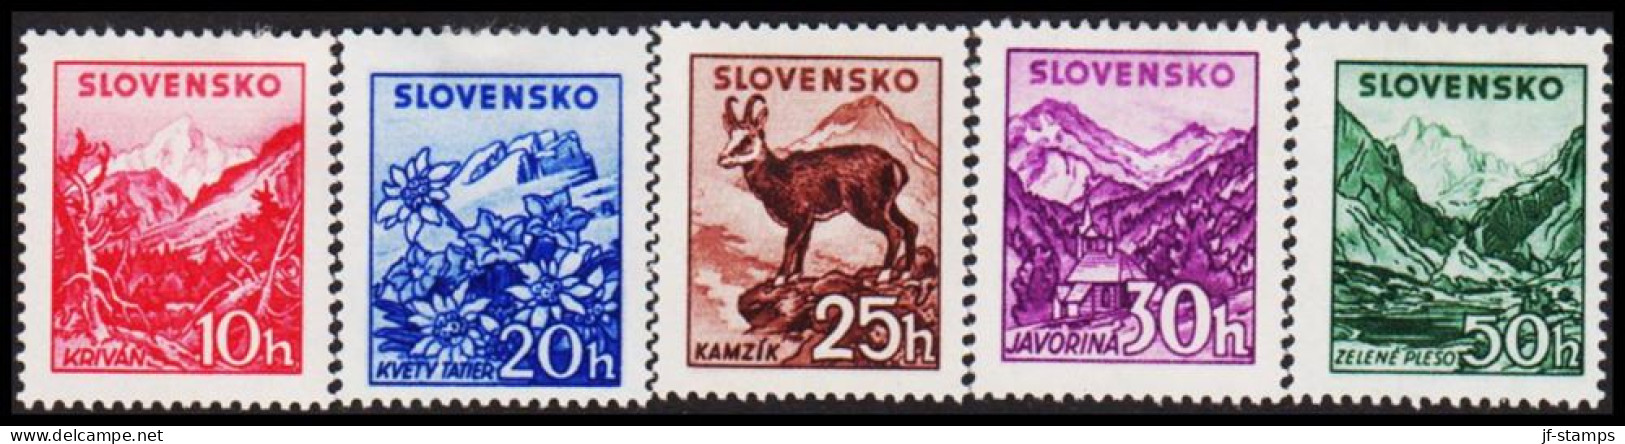 1944. SLOVENSKO Landscapes Complete Set Hinged.  (Michel 142-146) - JF546001 - Unused Stamps